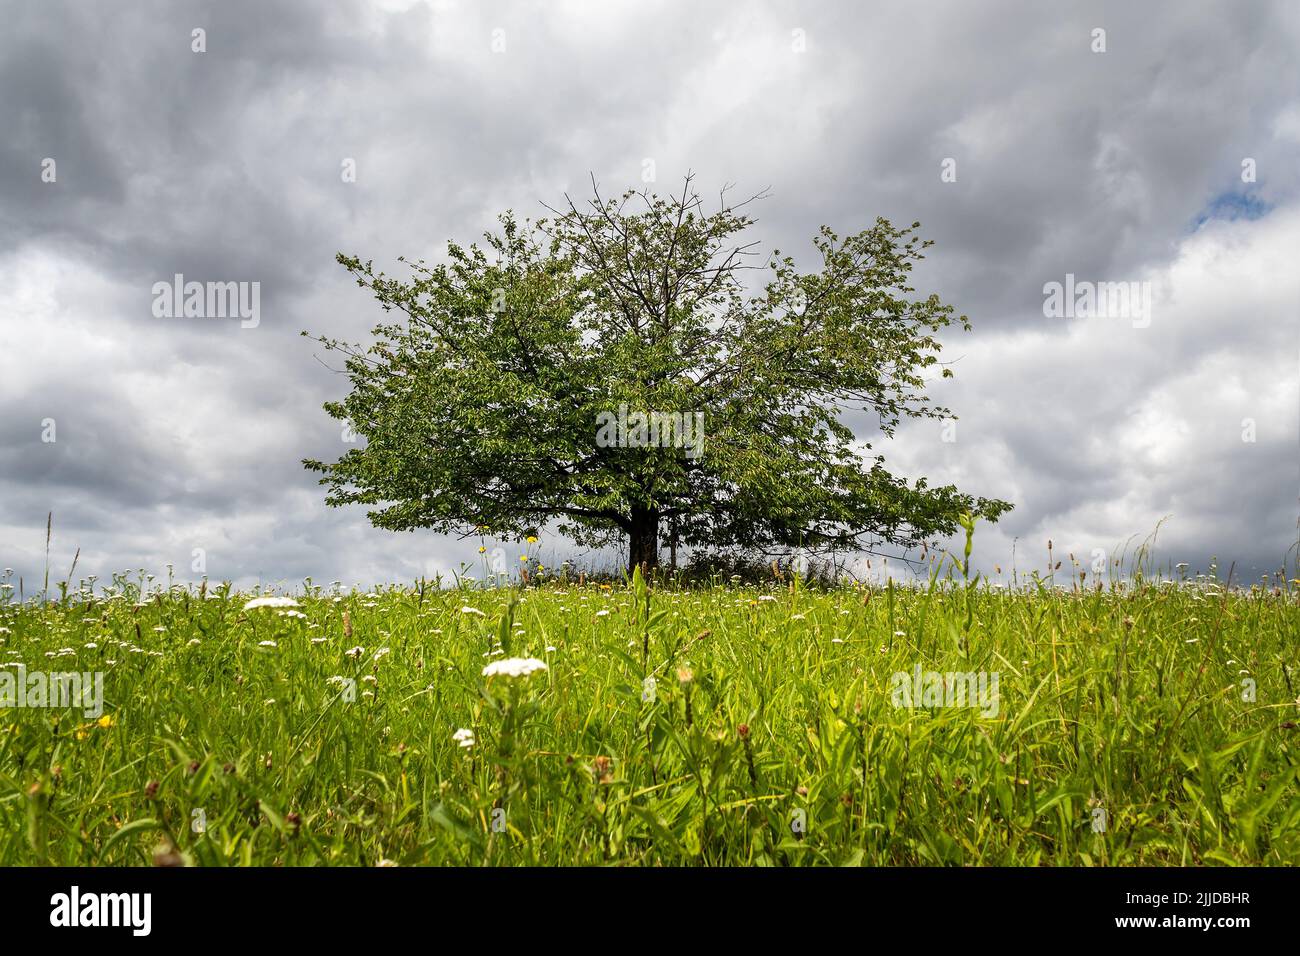 Ein Baum in einer Wiesenlandschaft, wolkig Himmel im Hintergrund Stockfoto